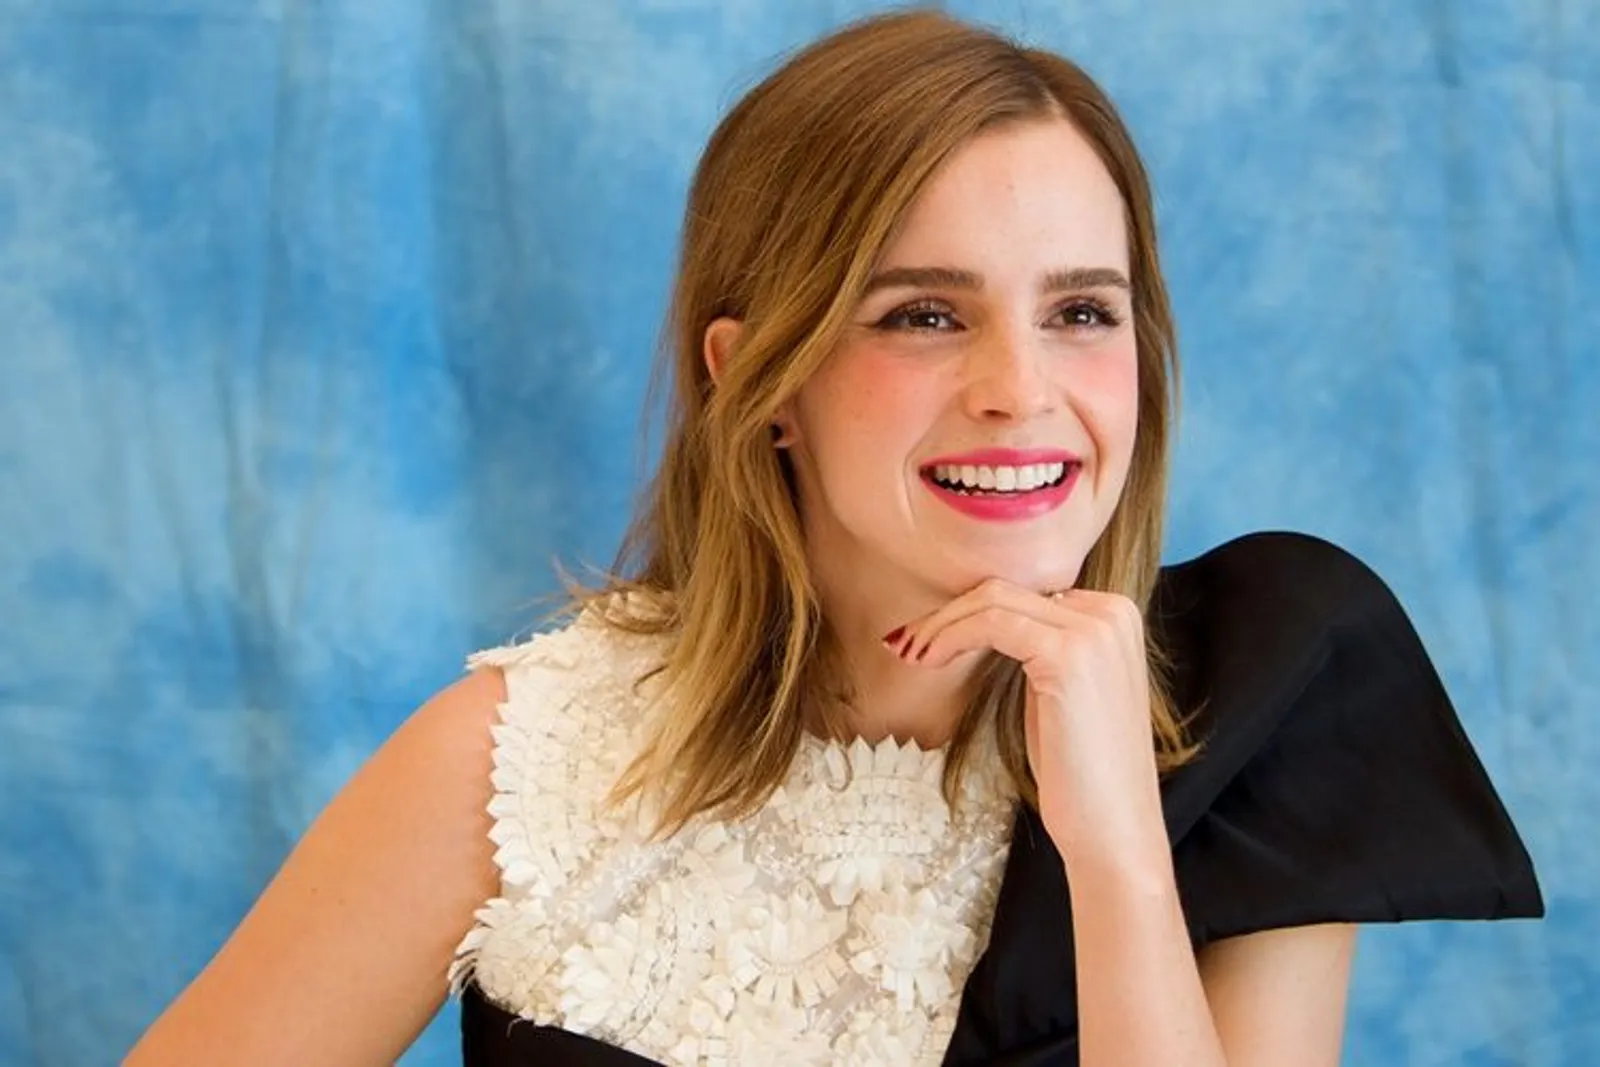 Mengaku Bahagia Jadi Single, Emma Watson Justru Kepergok Ciuman